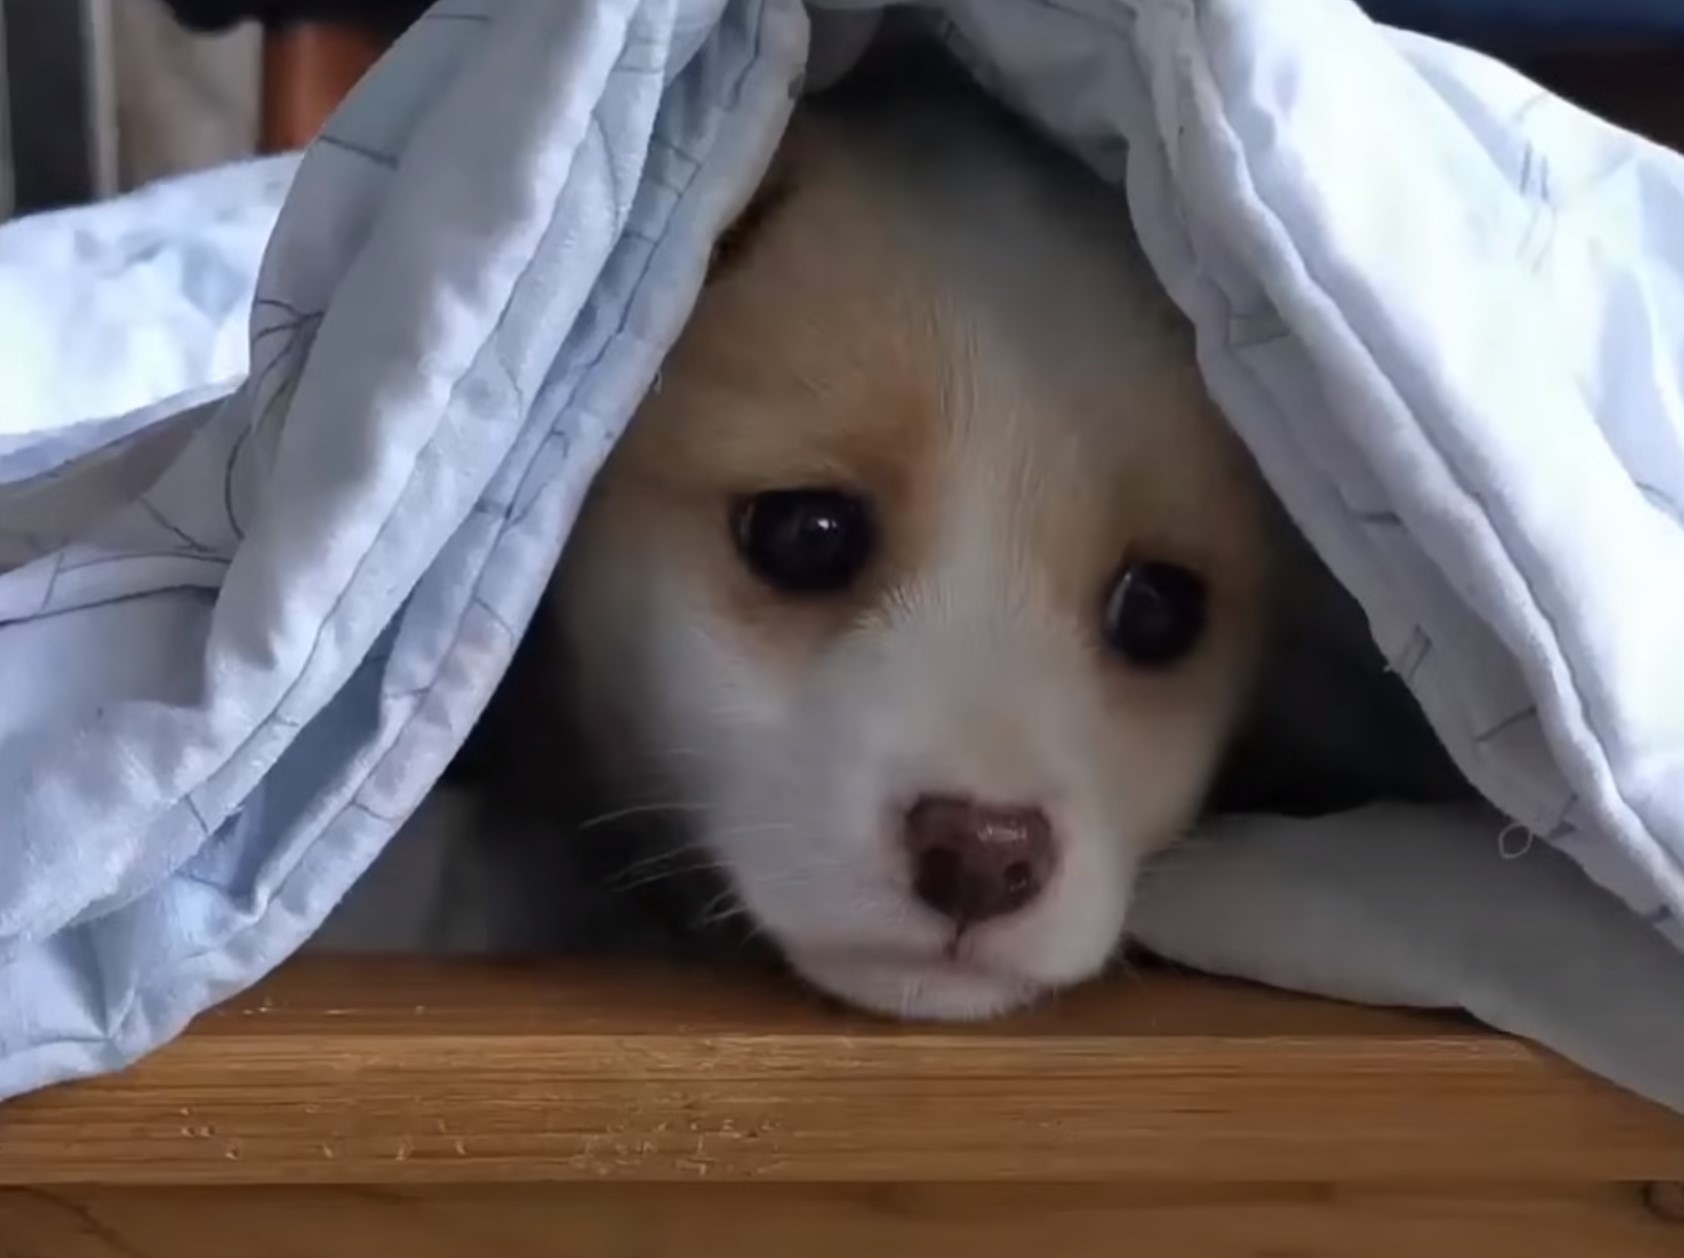 puppy under blanket